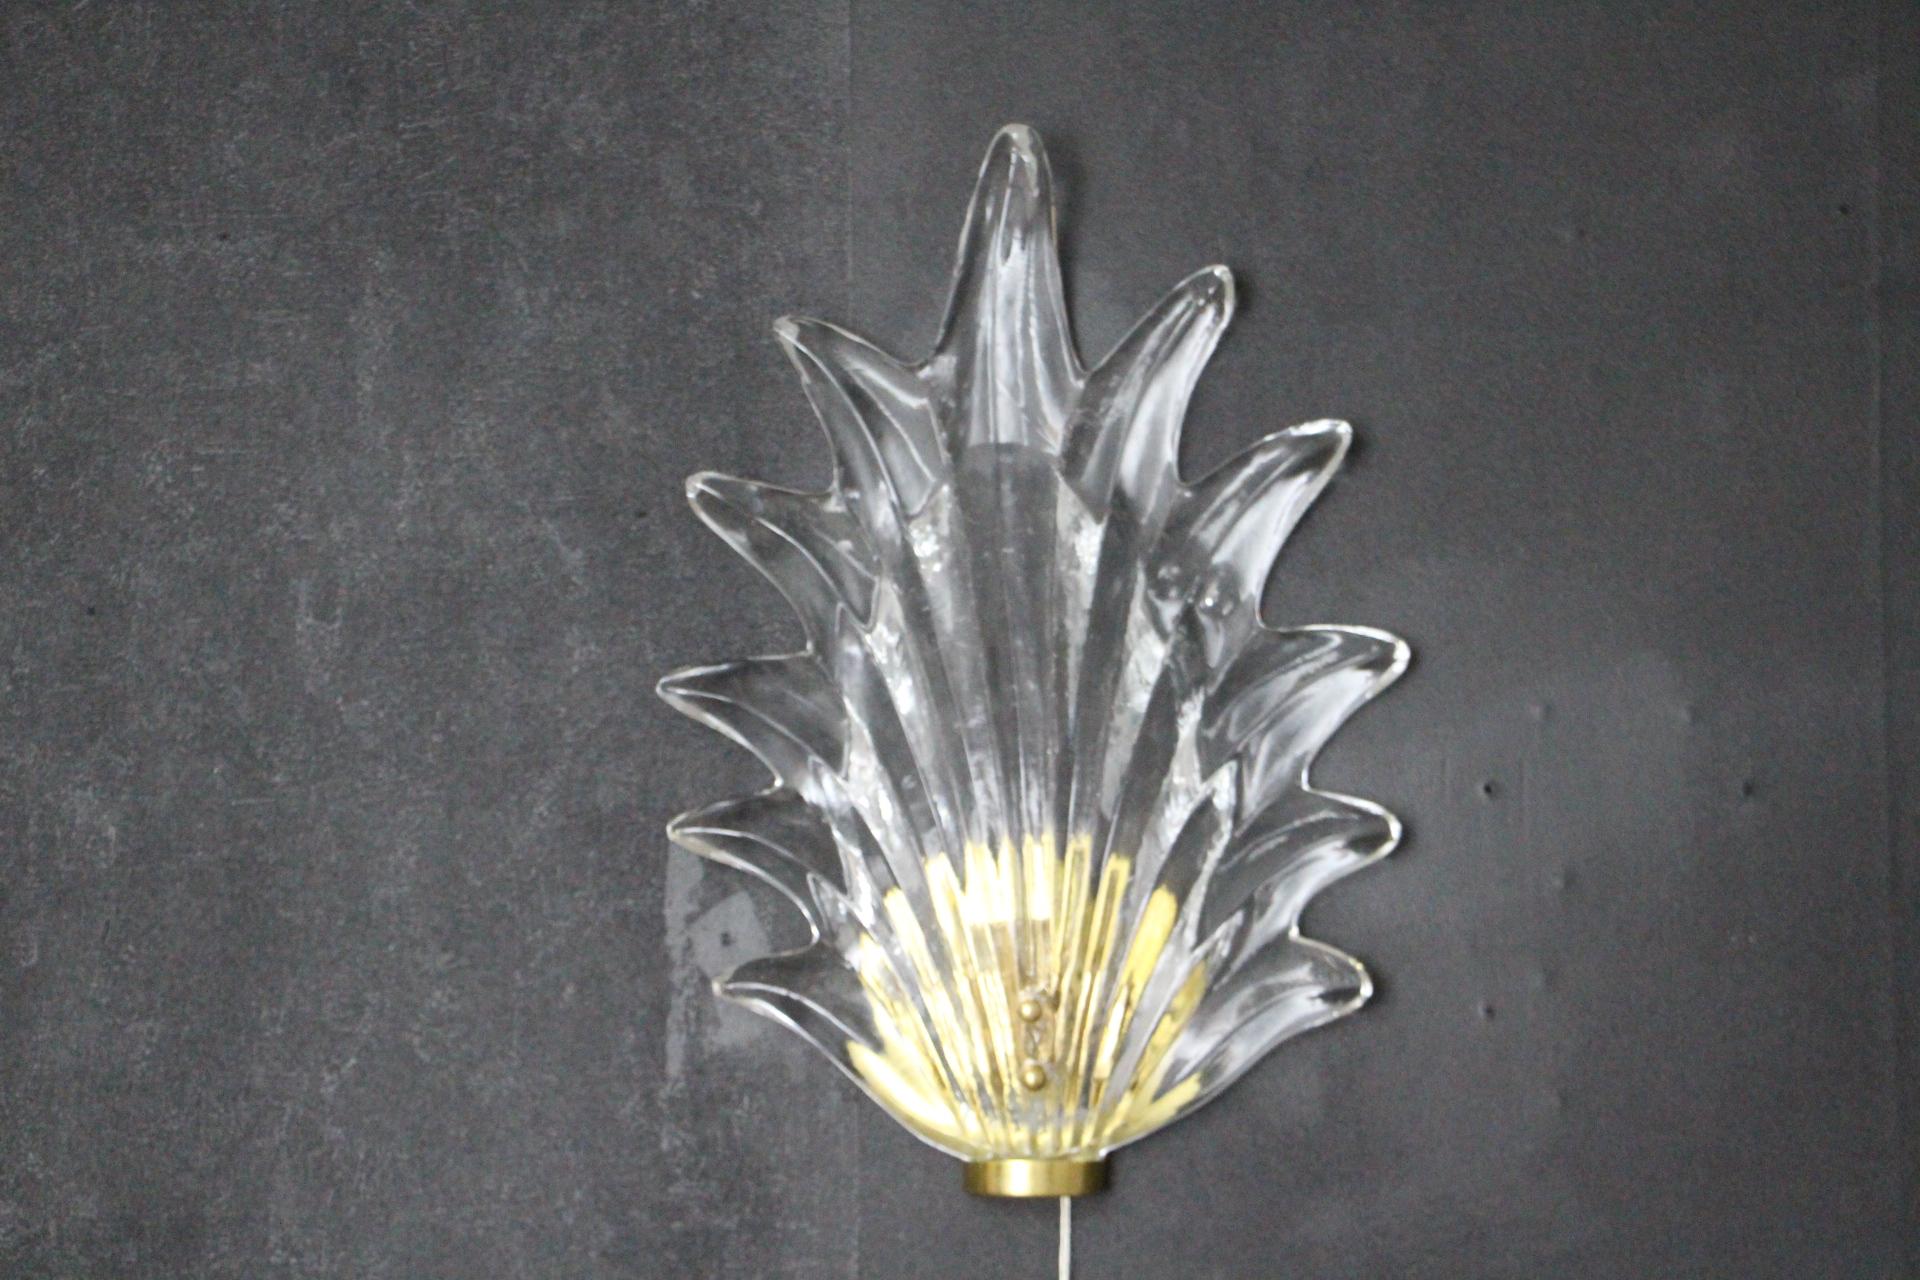 Dieses schöne blattförmige Murano-Glas wurde in Italien vollständig von Hand gefertigt und hat eine bemerkenswerte Form, als ob es sich bewegen sollte.
Sie ruht auf einem Sockel aus Messing, der ihre glühende Farbe zum Leuchten bringt...
In